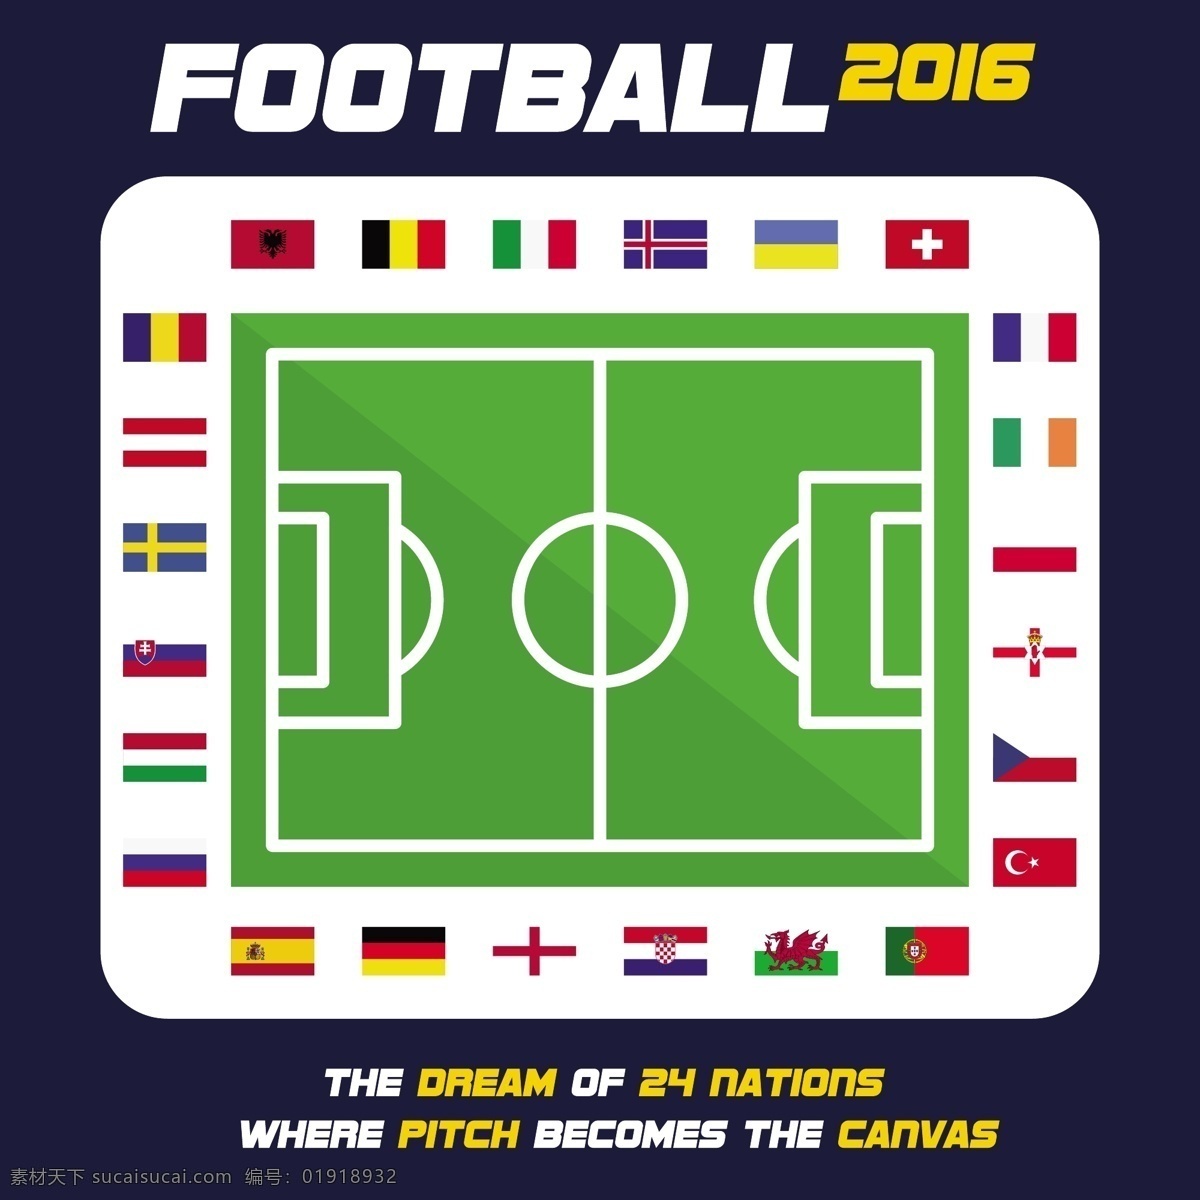 欧洲杯 周围 国旗 标志 图标 足球 体育 世界 互联网 杯 冠军 2016 意大利 集团 法国 白色 符号 国家 欧元 英国 德国